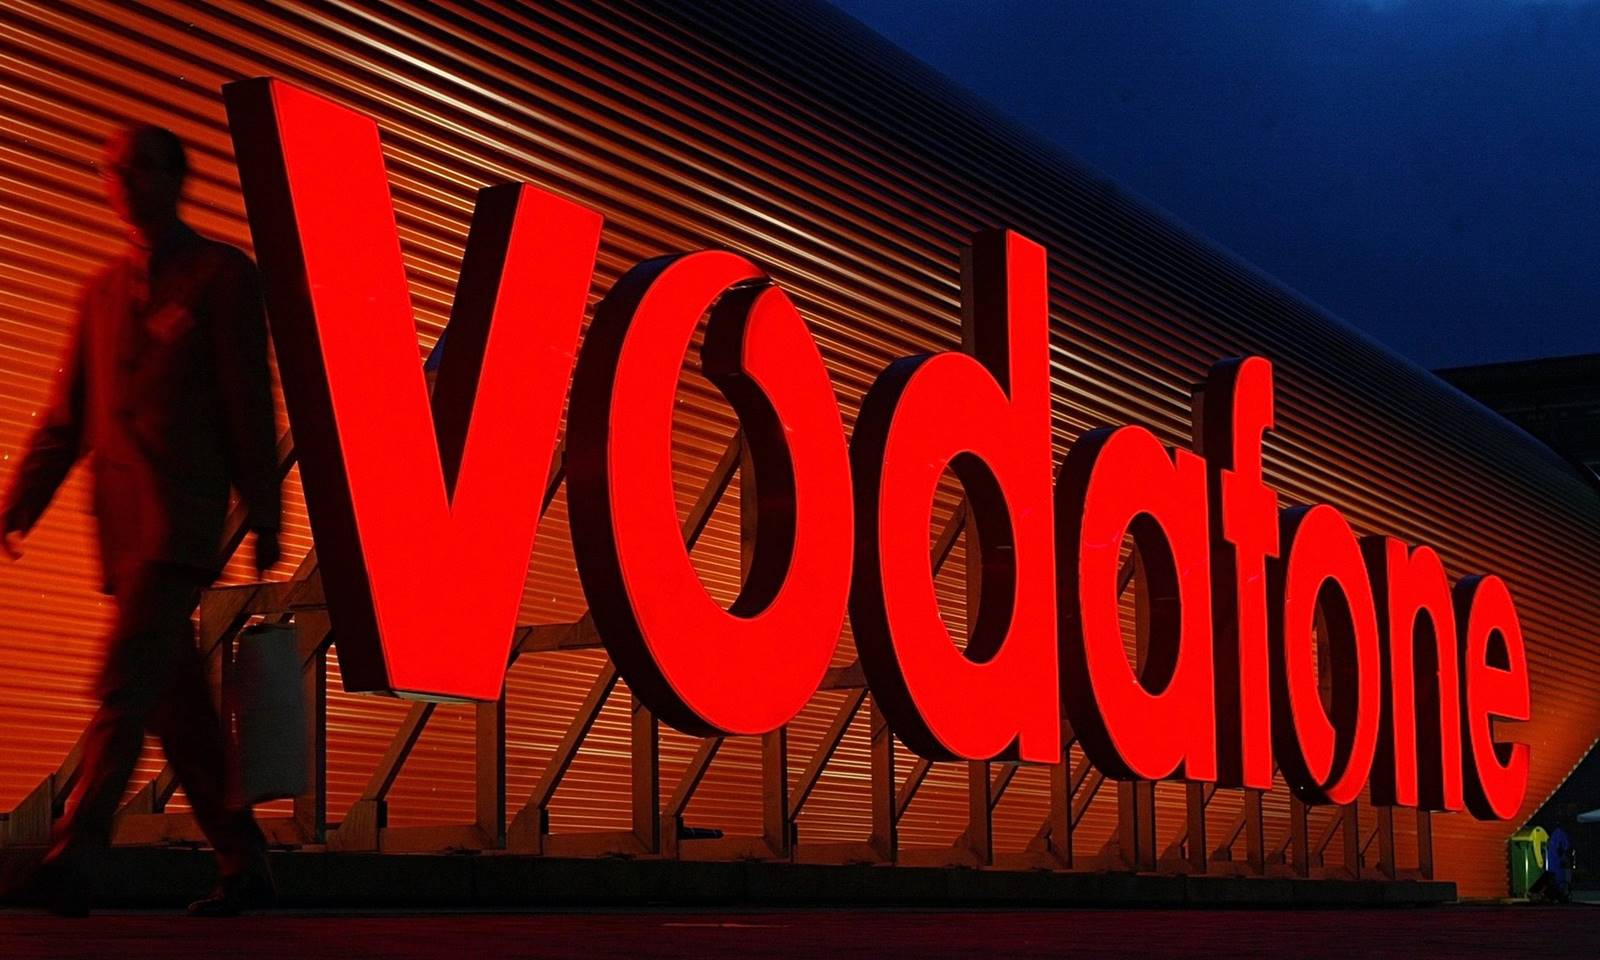 Neues Vodafone-Smartphone mit großen Rabatten